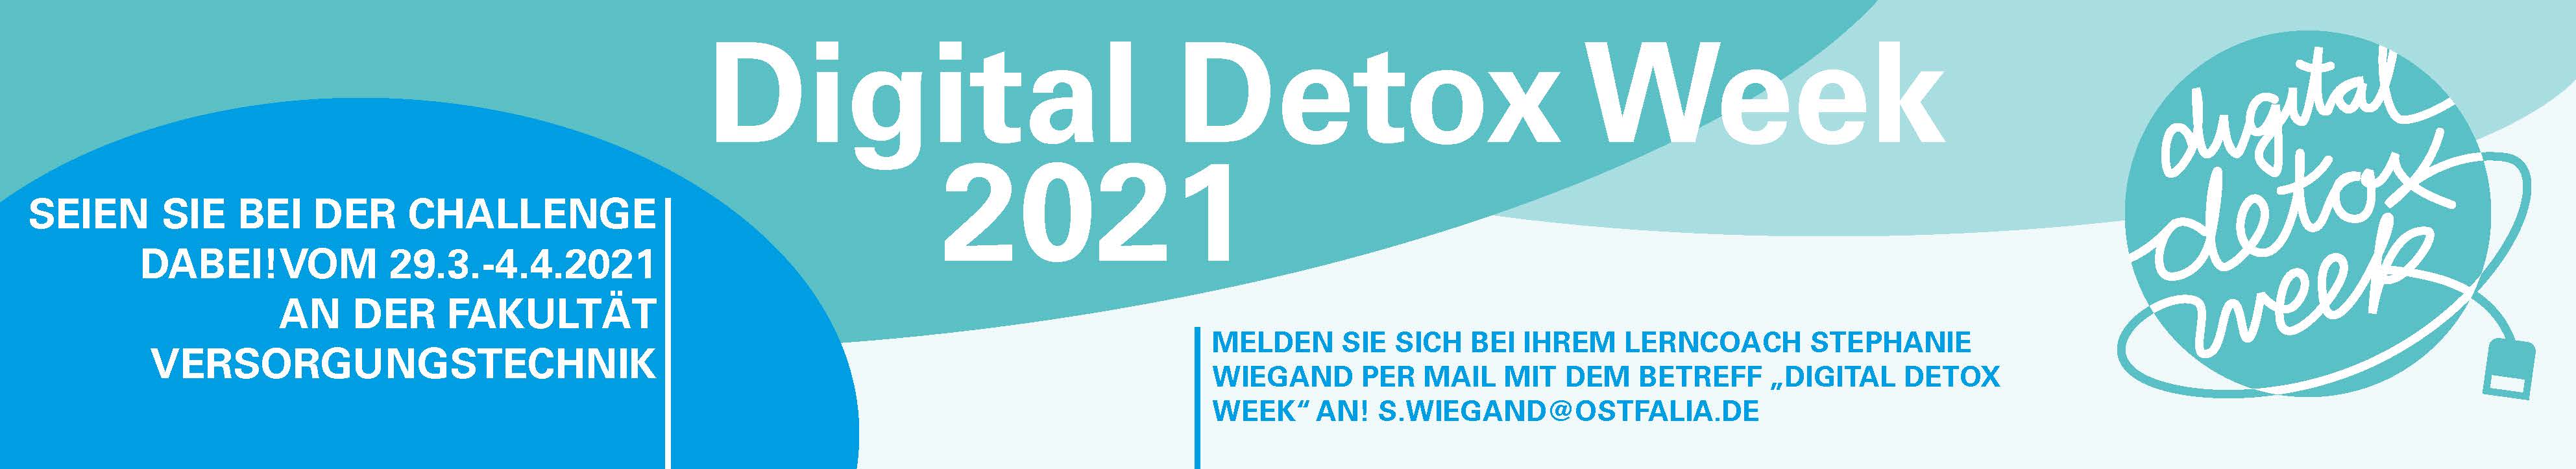 Digital Detox Week: Eine Woche ohne